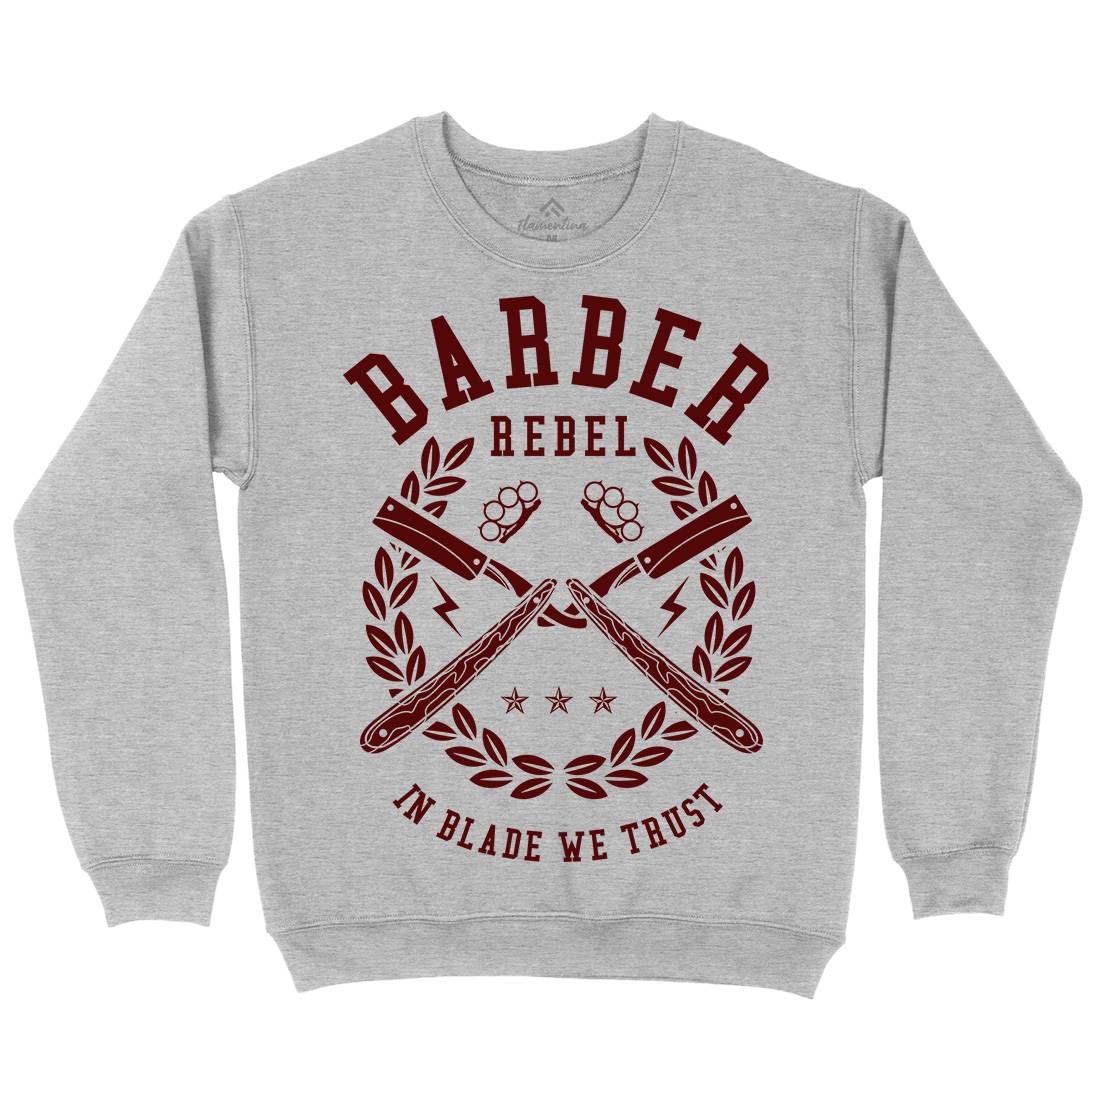 Rebel Kids Crew Neck Sweatshirt Barber A203